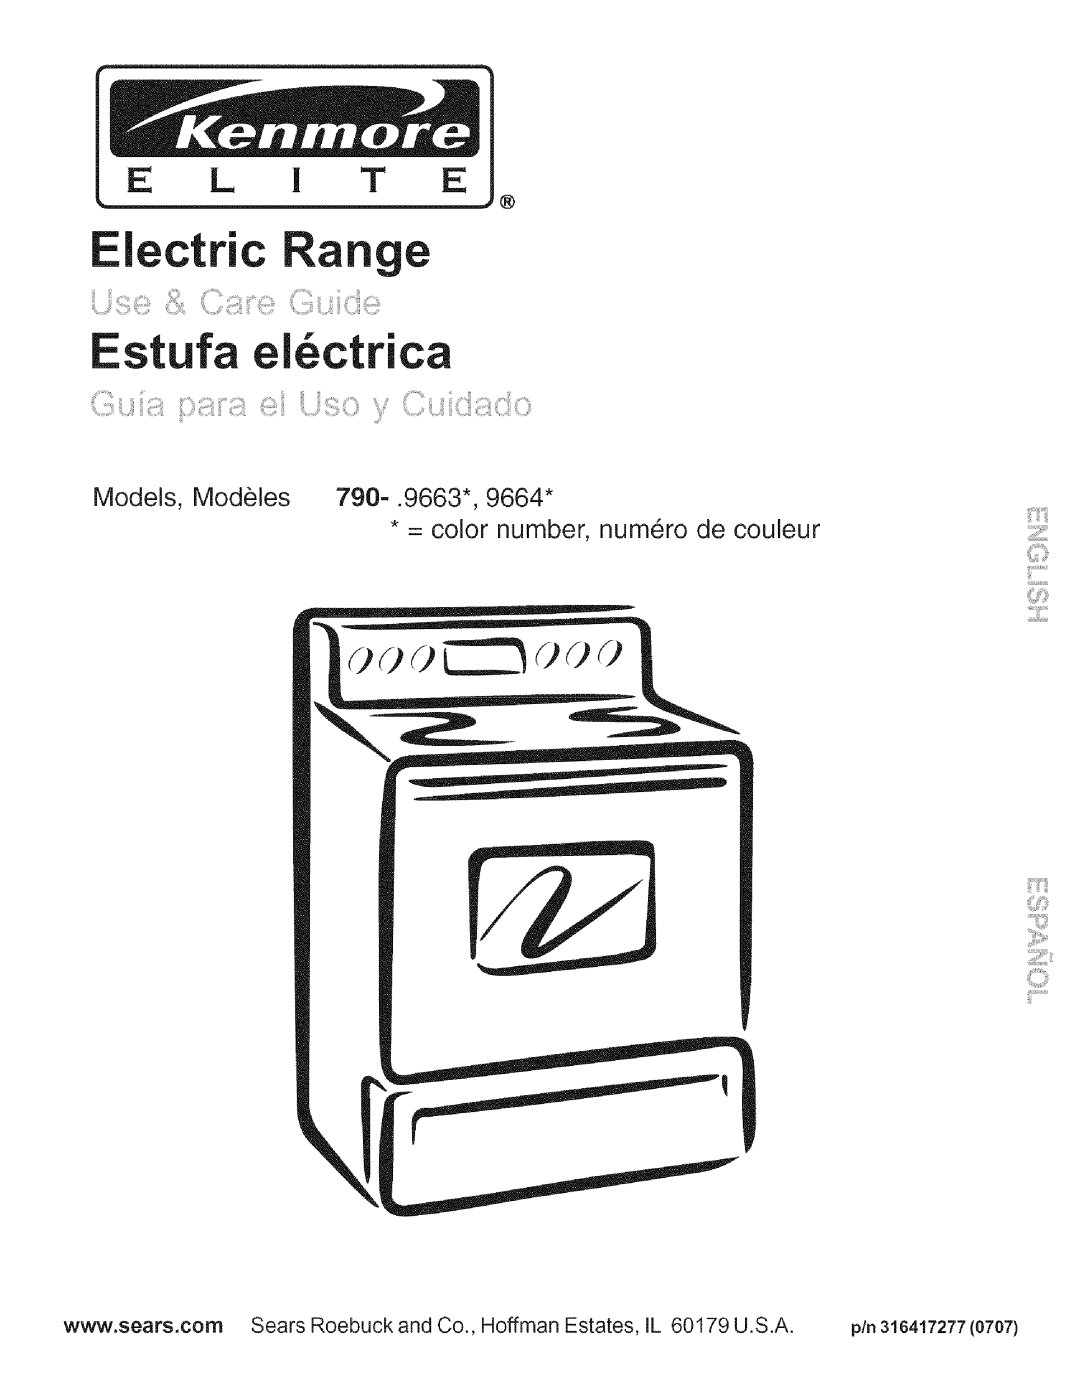 Kenmore 9664 manual Electric Range, E L I T E, Models, Modeles 790-.9663, = color number, numero de couleur 